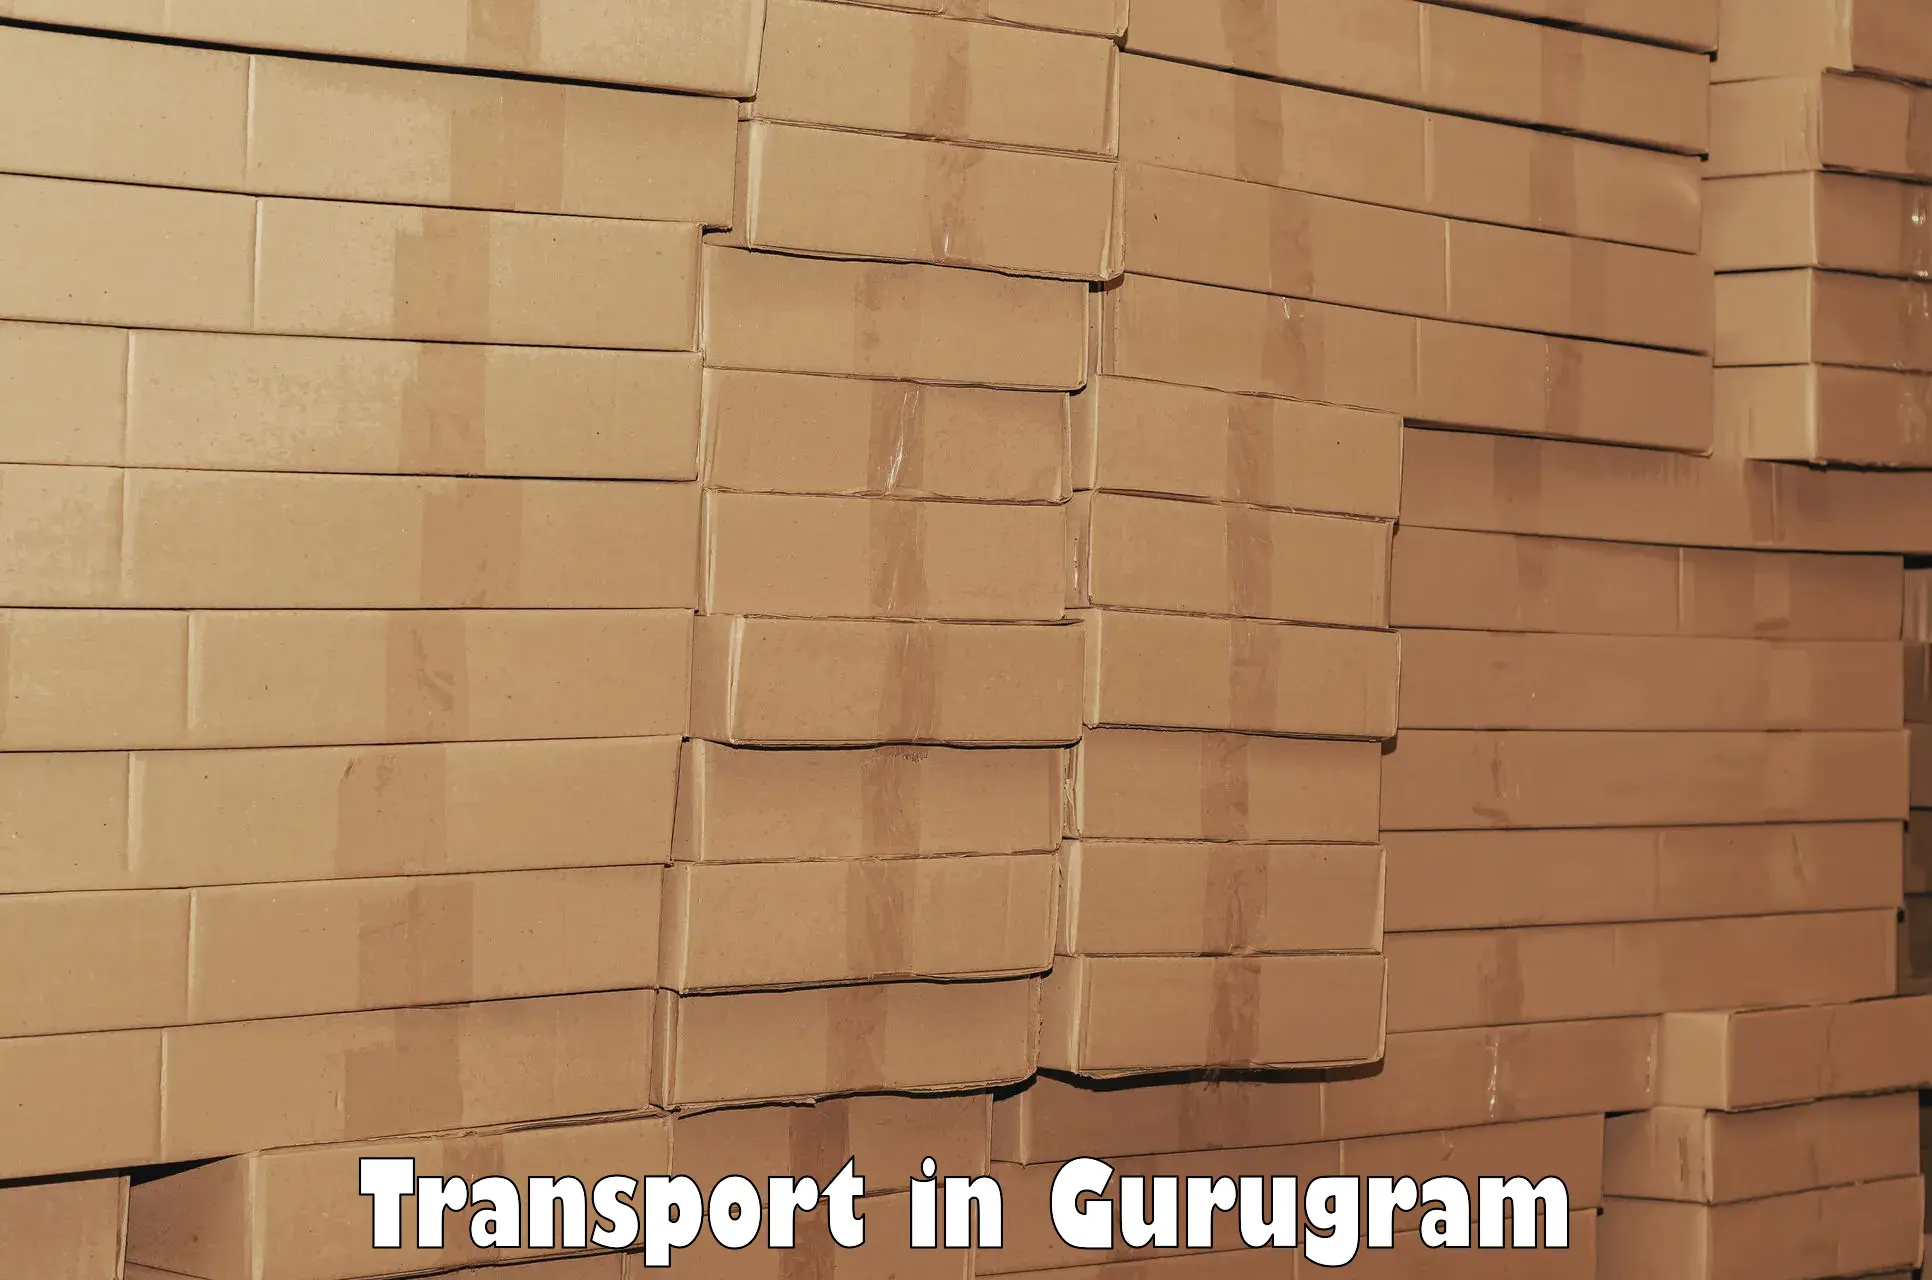 Goods delivery service in Gurugram